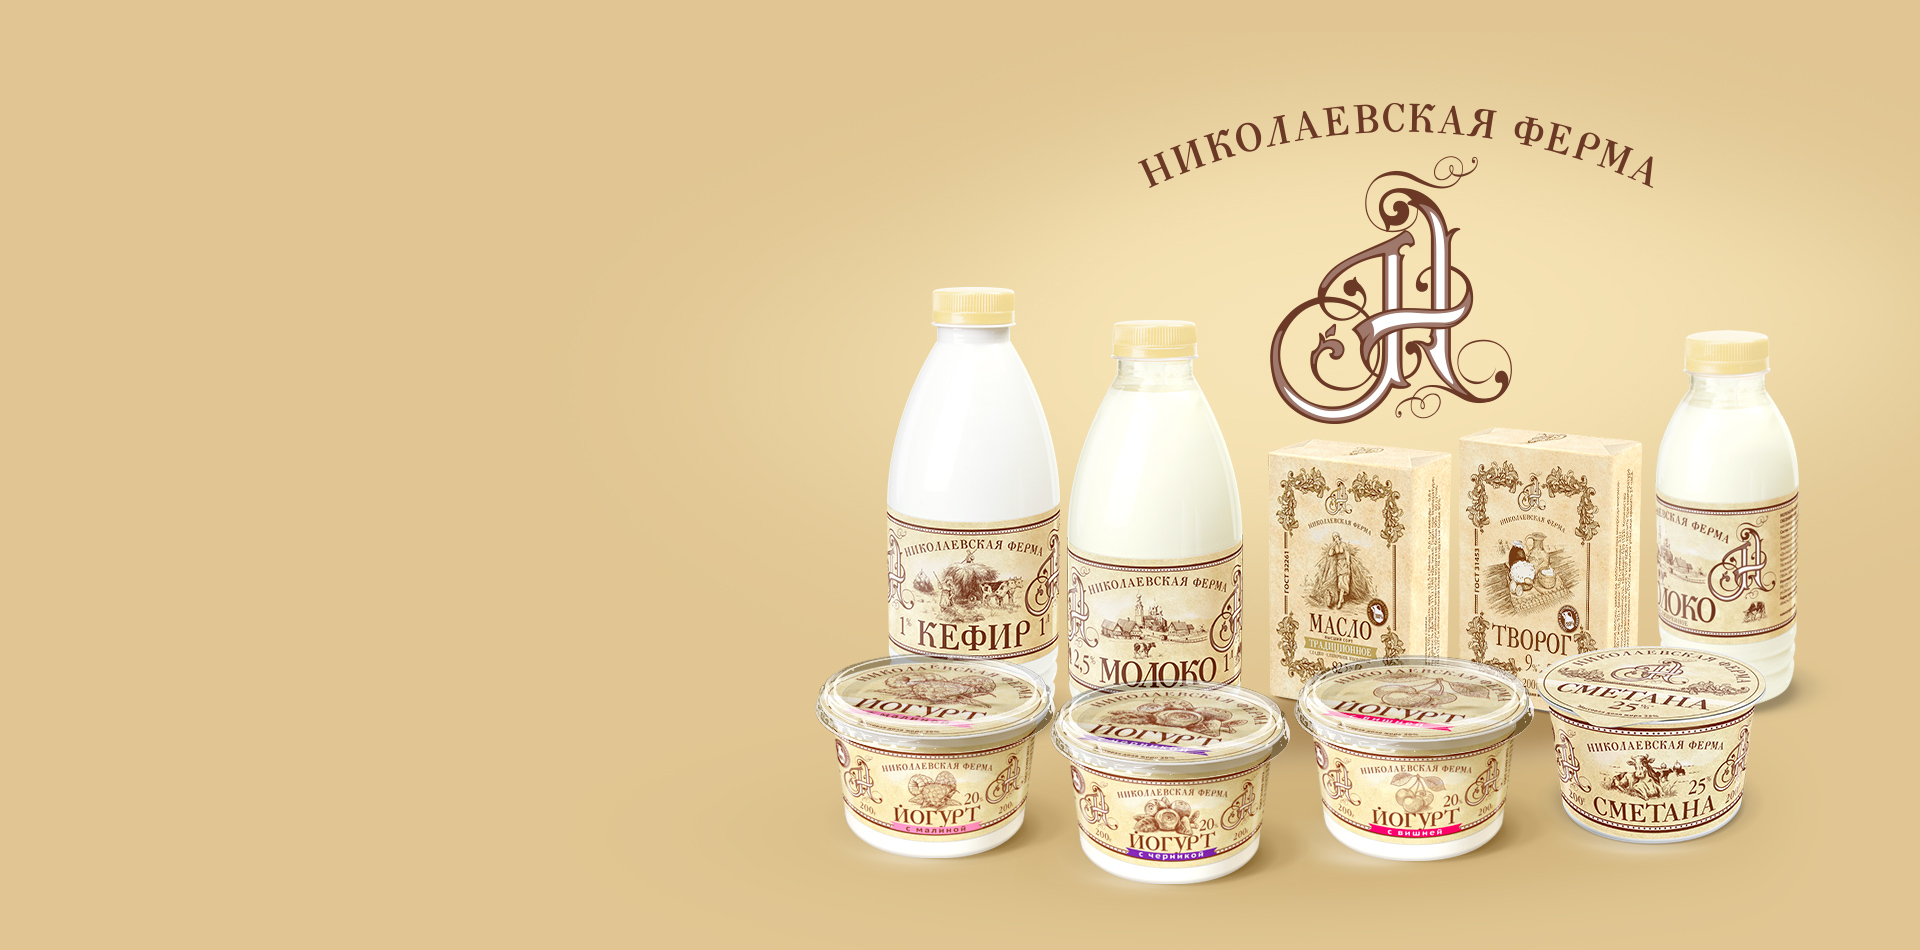 Дизайн этикетки серии молочной продукции